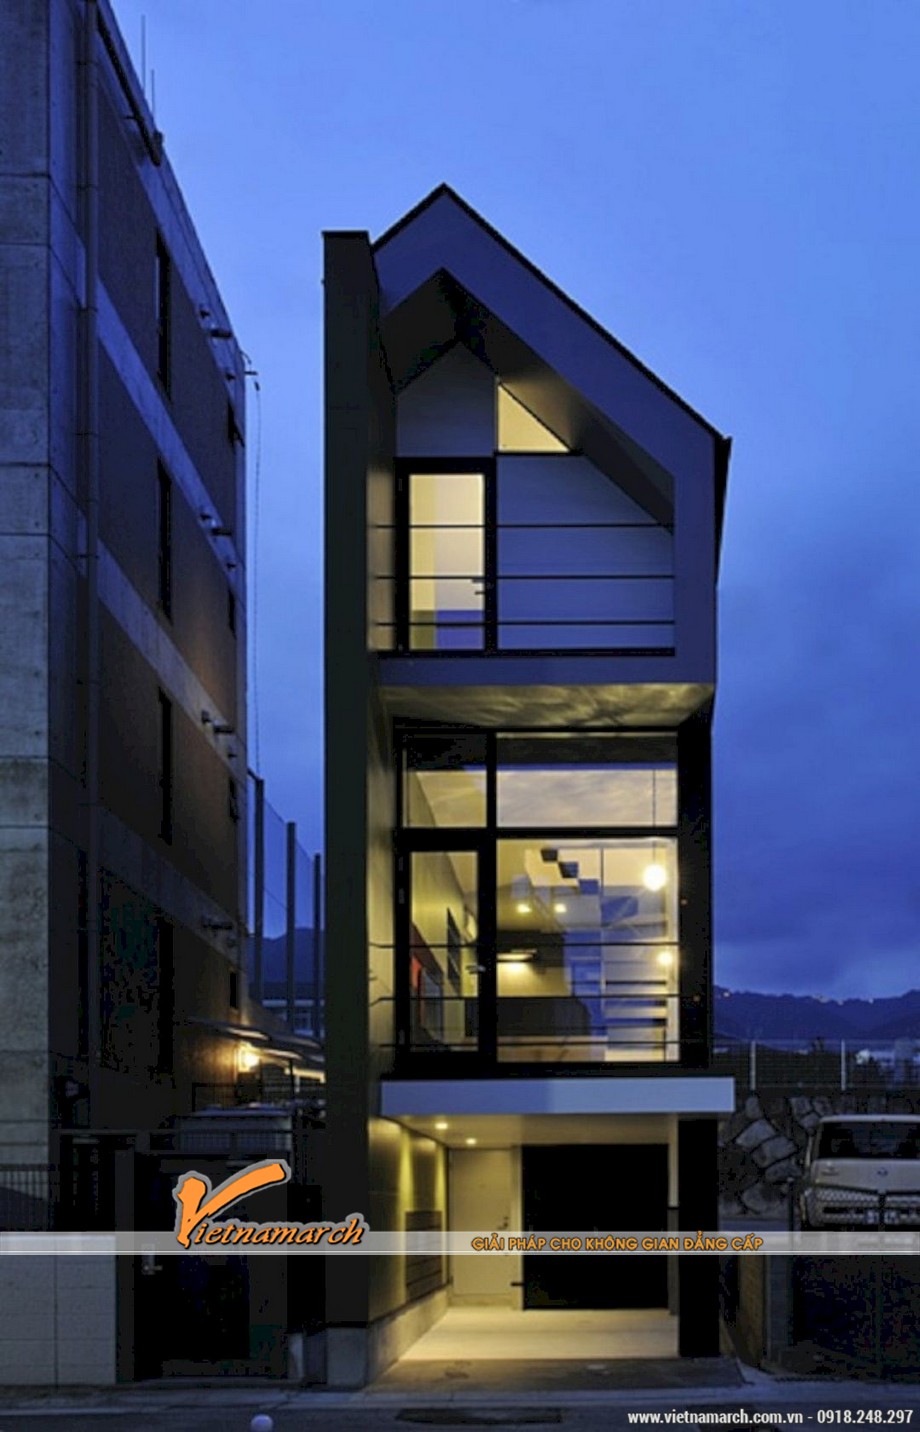 6 mẫu thiết kế nhà phố mái lệch độc đáo không thể bỏ qua > Mẫu 5: Thiết kế hình khối đơn giản mang phong cách mạnh mẽ